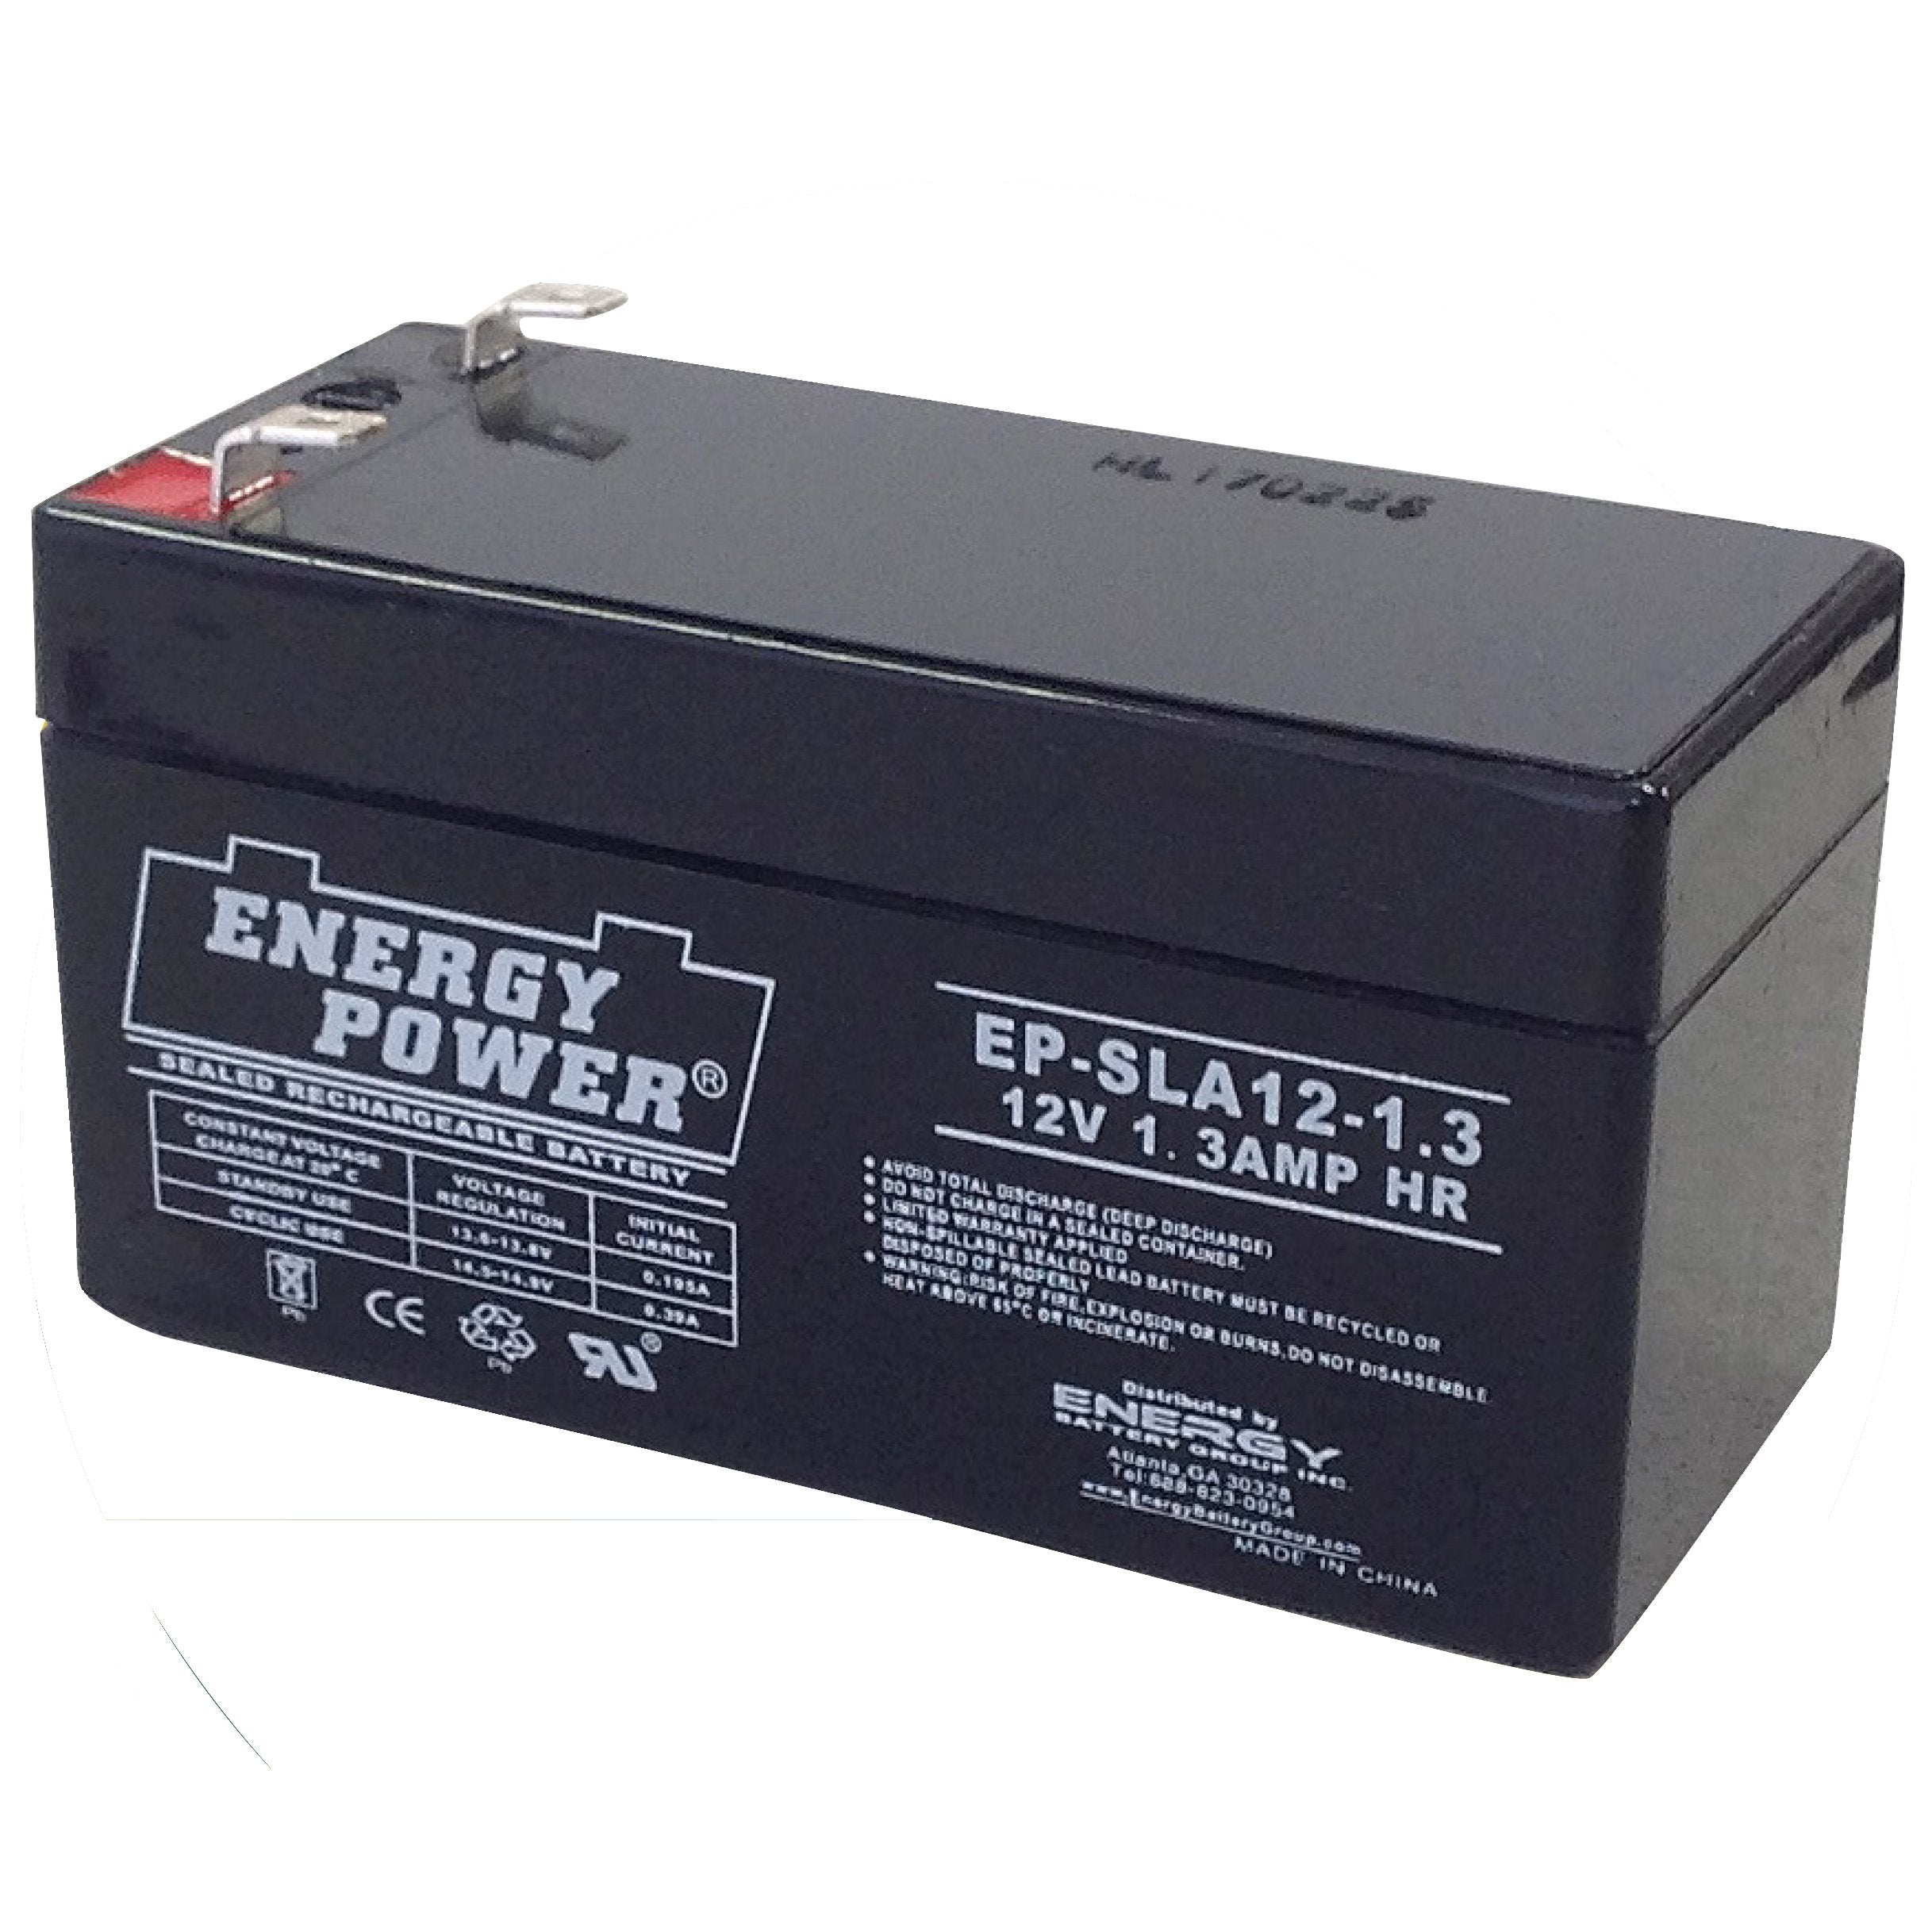 Energy Power 12V, 1.3AH SLA AGM Battery - T1